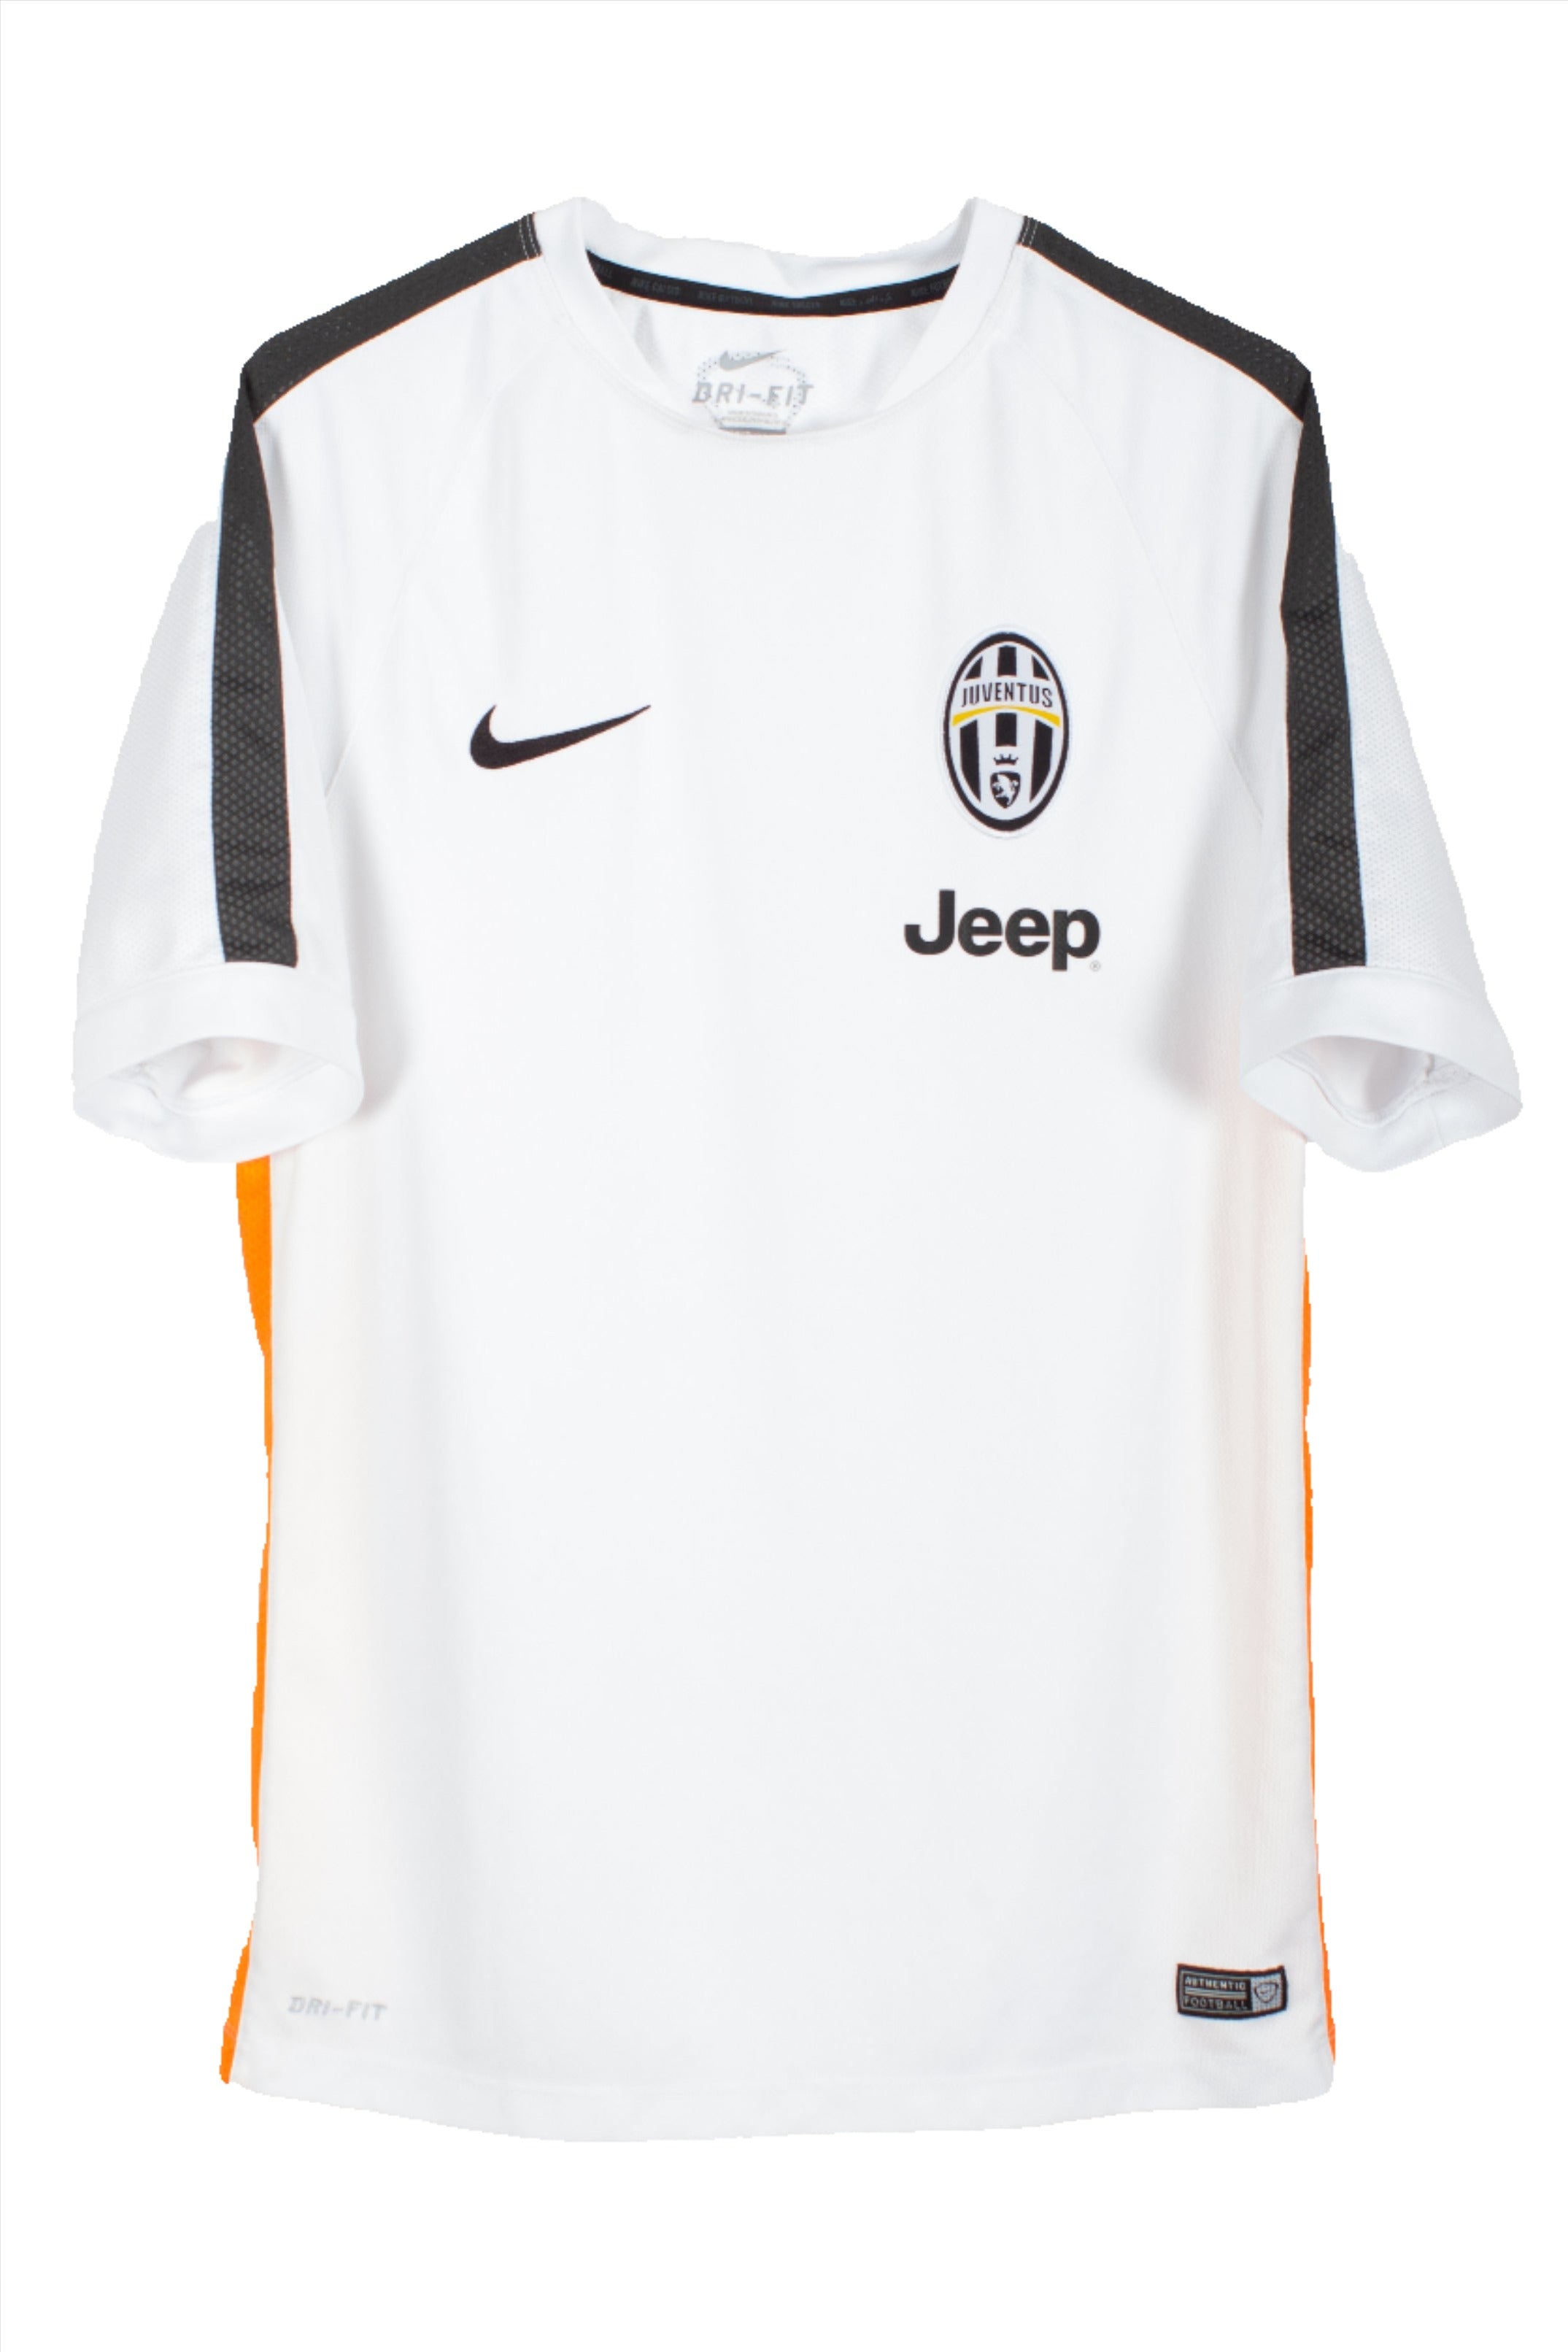 KIDS Juventus 2014/15 Training Football Shirt